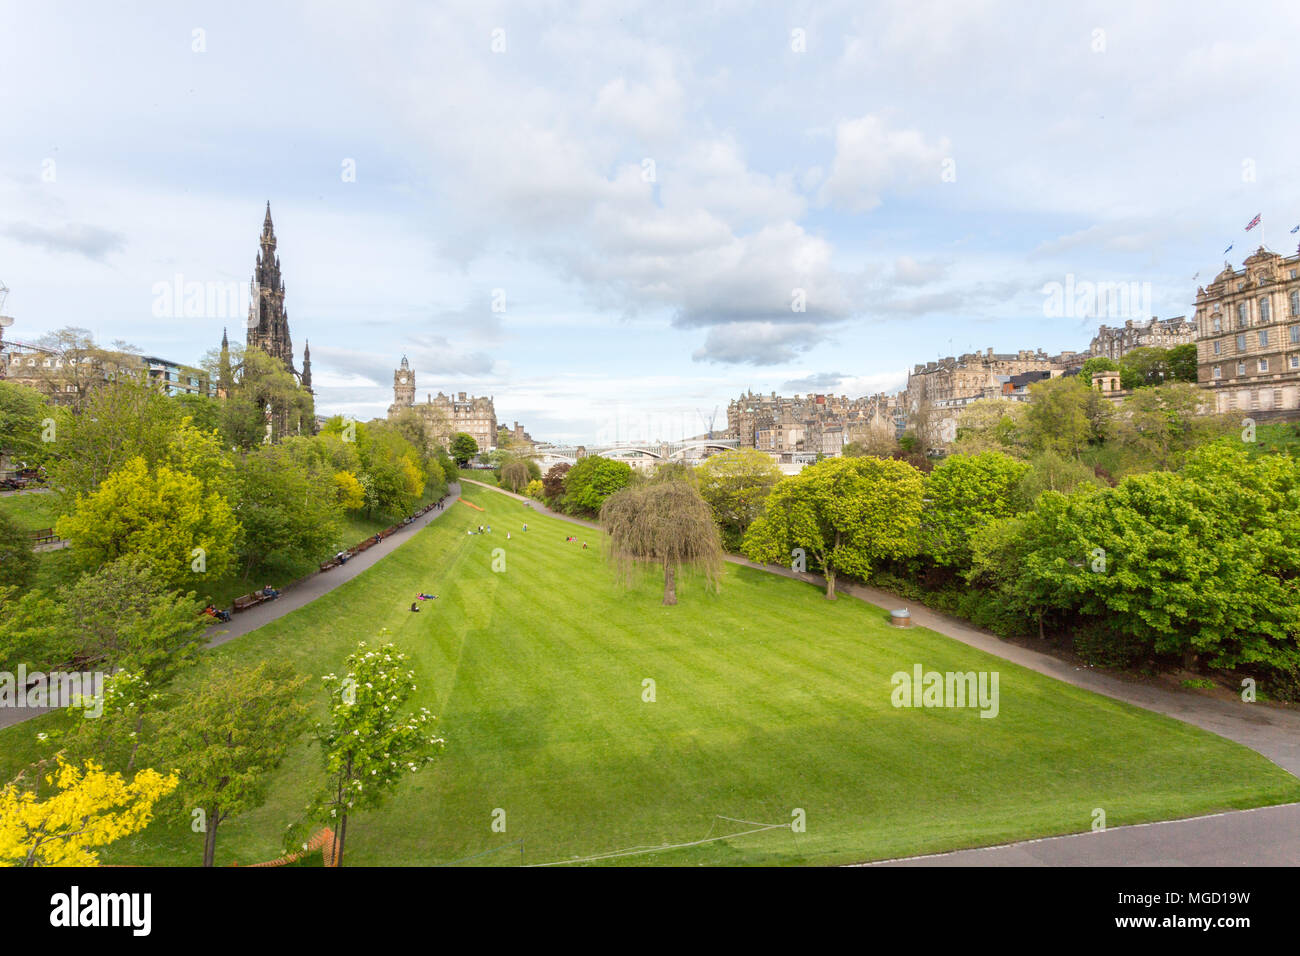 Edimburgo/SCOZIA - 20 Maggio 2015: su un parzialmente soleggiato giorno a Edimburgo in Scozia che si affaccia sulla Princes Street Gardens nel verde lussureggiante. Foto Stock